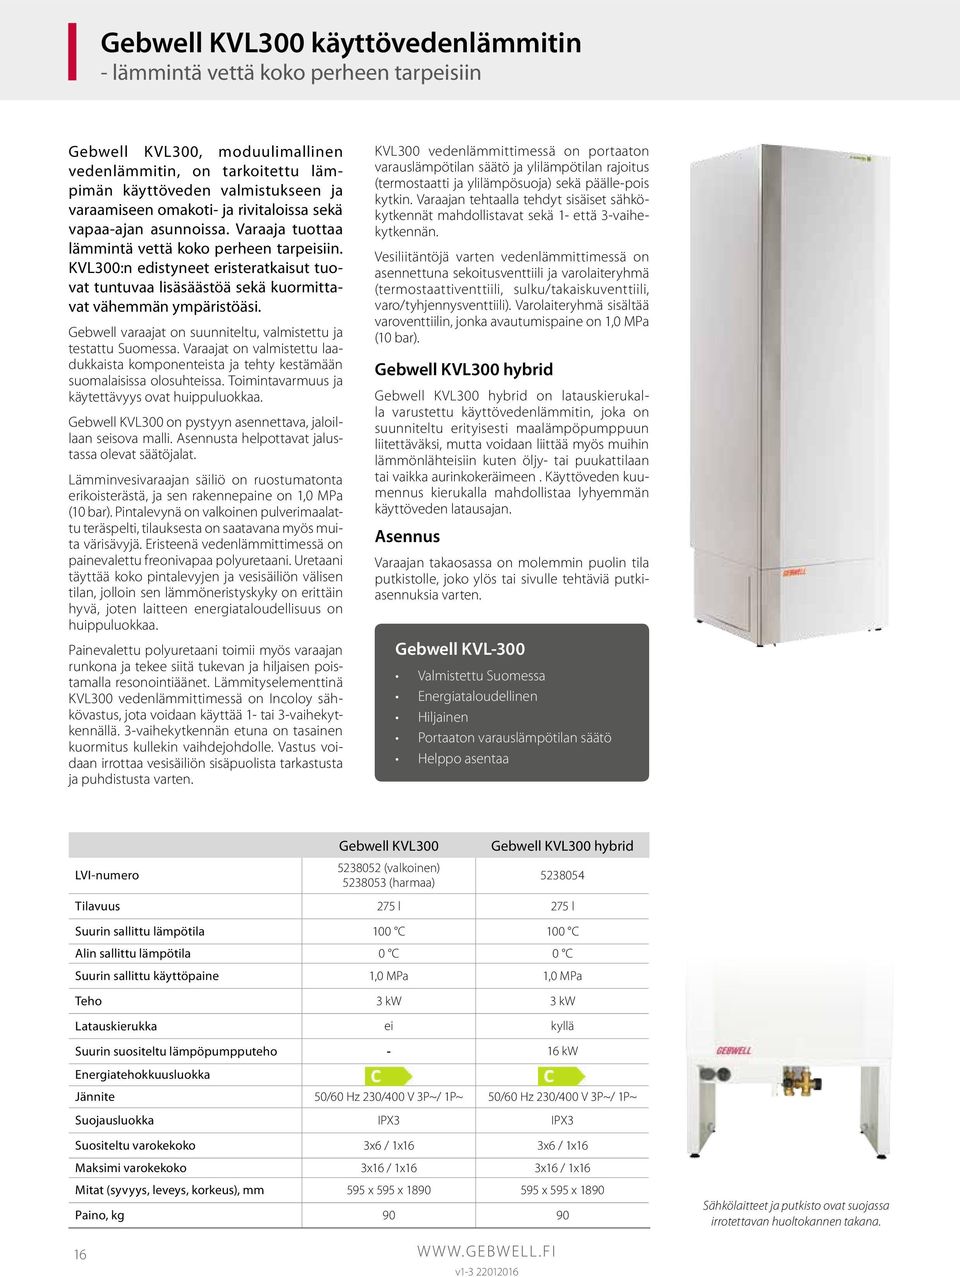 KVL300:n edistyneet eristeratkaisut tuovat tuntuvaa lisäsäästöä sekä kuormittavat vähemmän ympäristöäsi. Gebwell varaajat on suunniteltu, valmistettu ja testattu Suomessa.